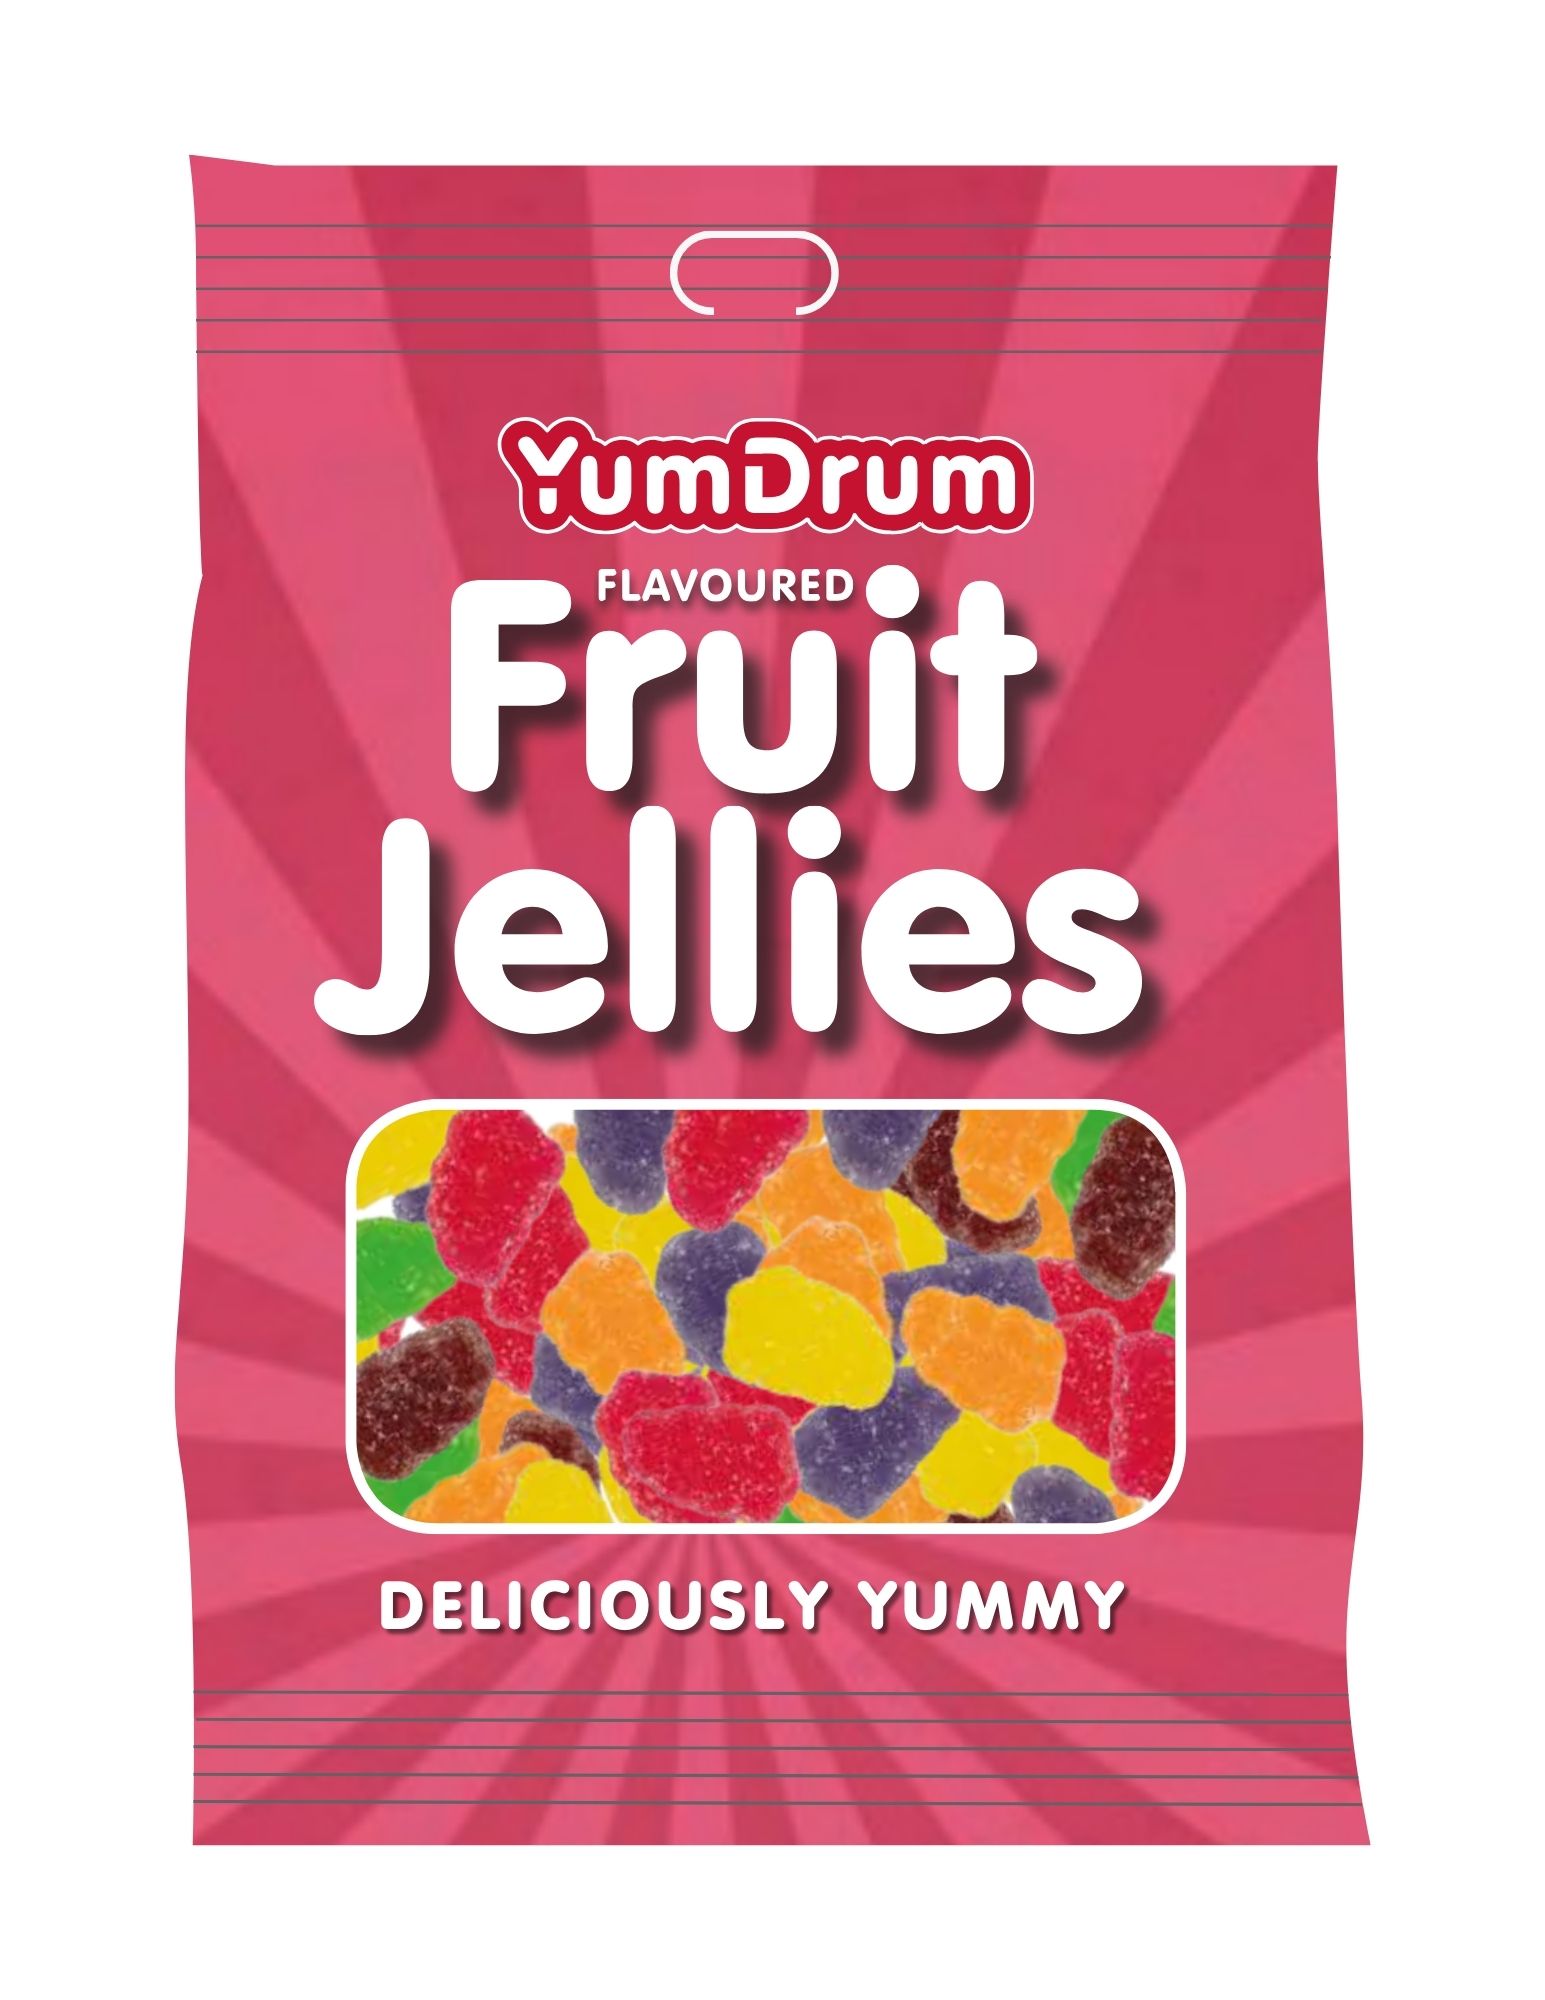 YUMDRUM JELLY FRUITS